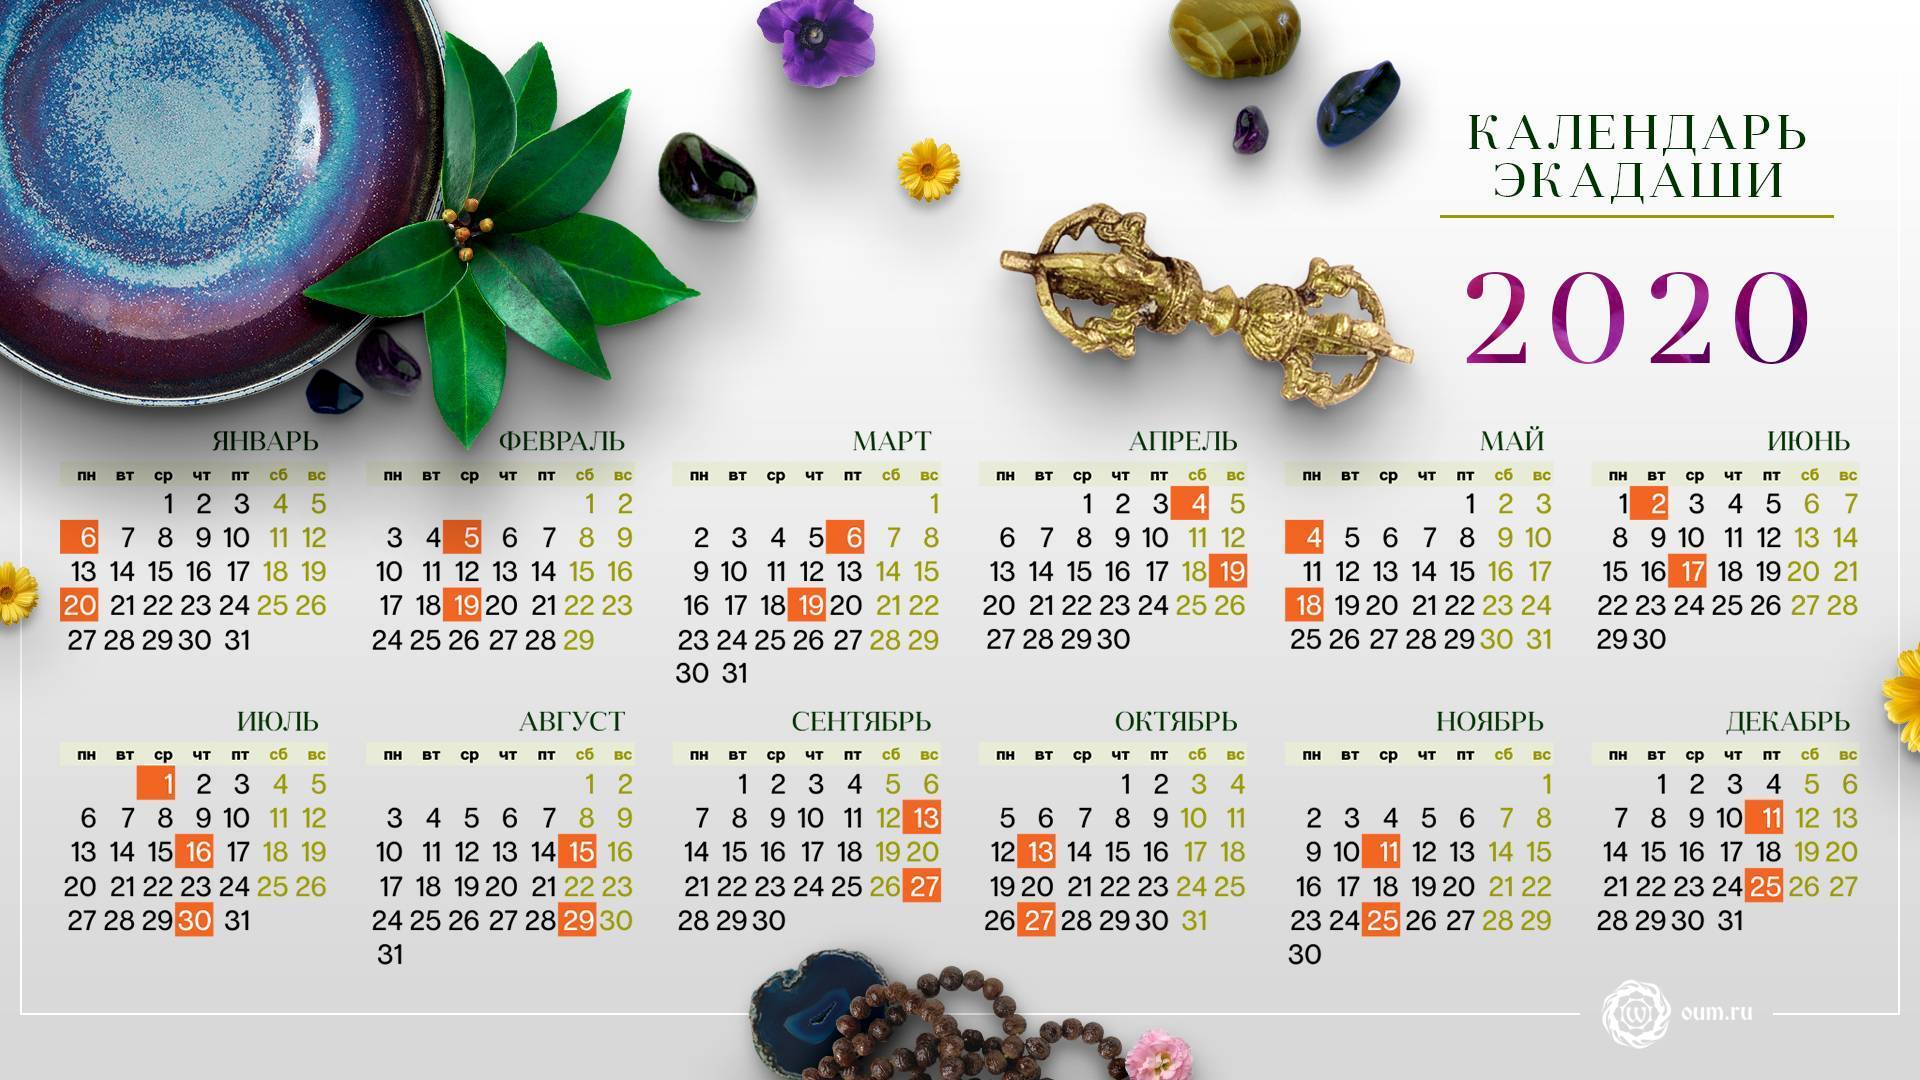 Лунный календарь экадаши на 2020 год для москвы и спб, влияние луны